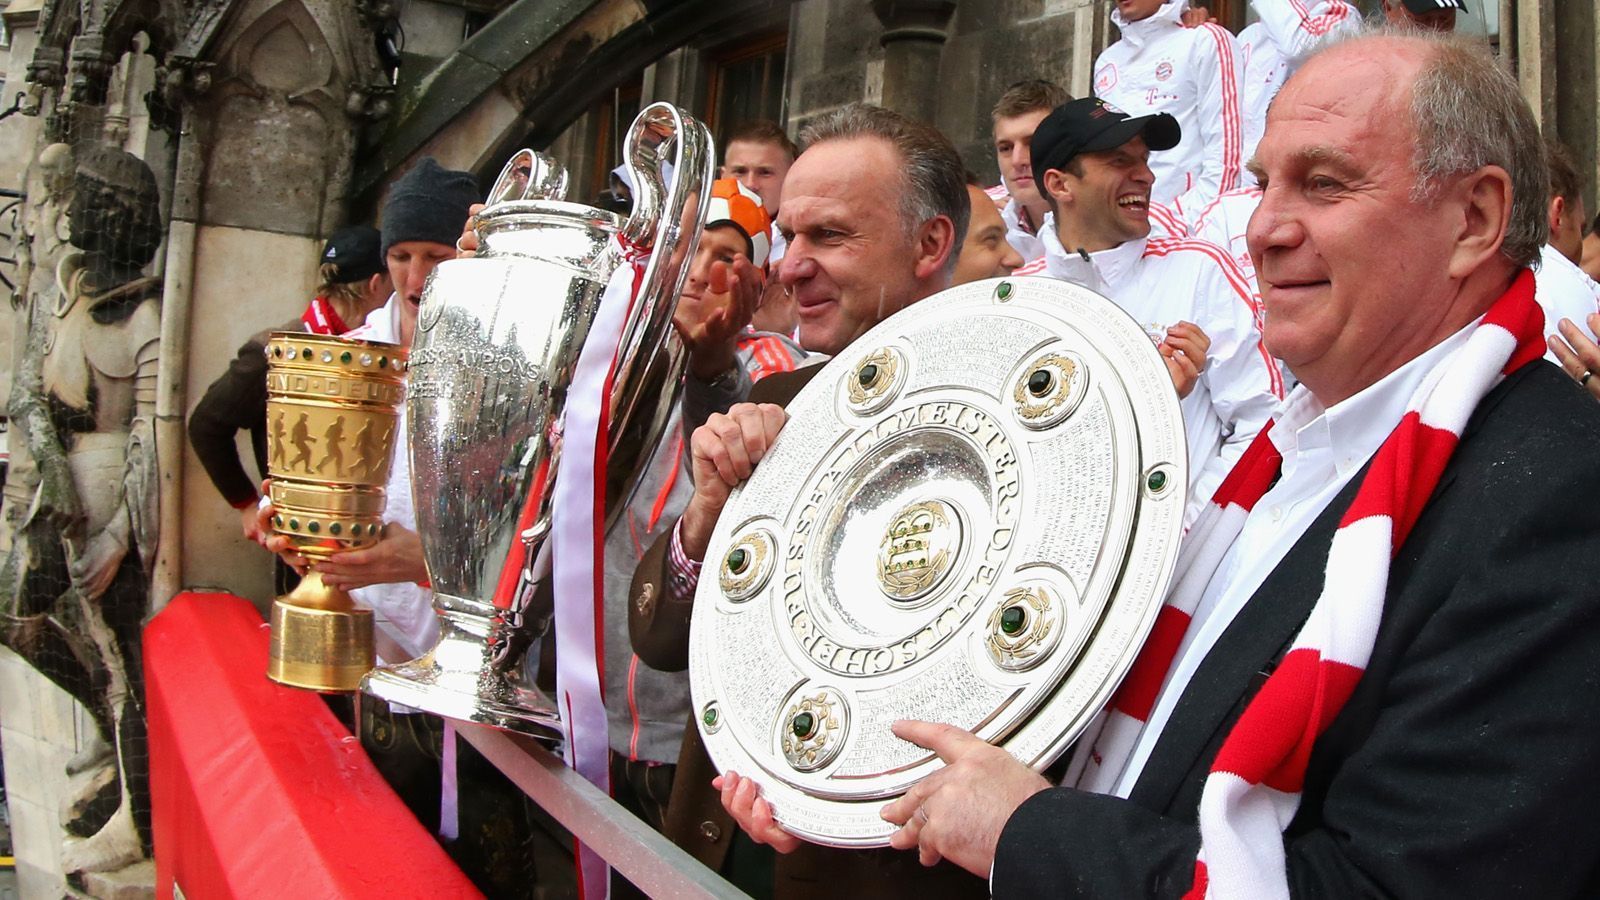 
                <strong>Mia san Triple</strong><br>
                Der größte Titel-Triumph folgt zwölf Jahre später, als die Bayern mit ihrer Führungsspitze Hoeneß/Rummenigge erstmals in der Vereinsgeschichte das Triple aus Meisterschale, Pokal und Champions League in den Händen halten.
              